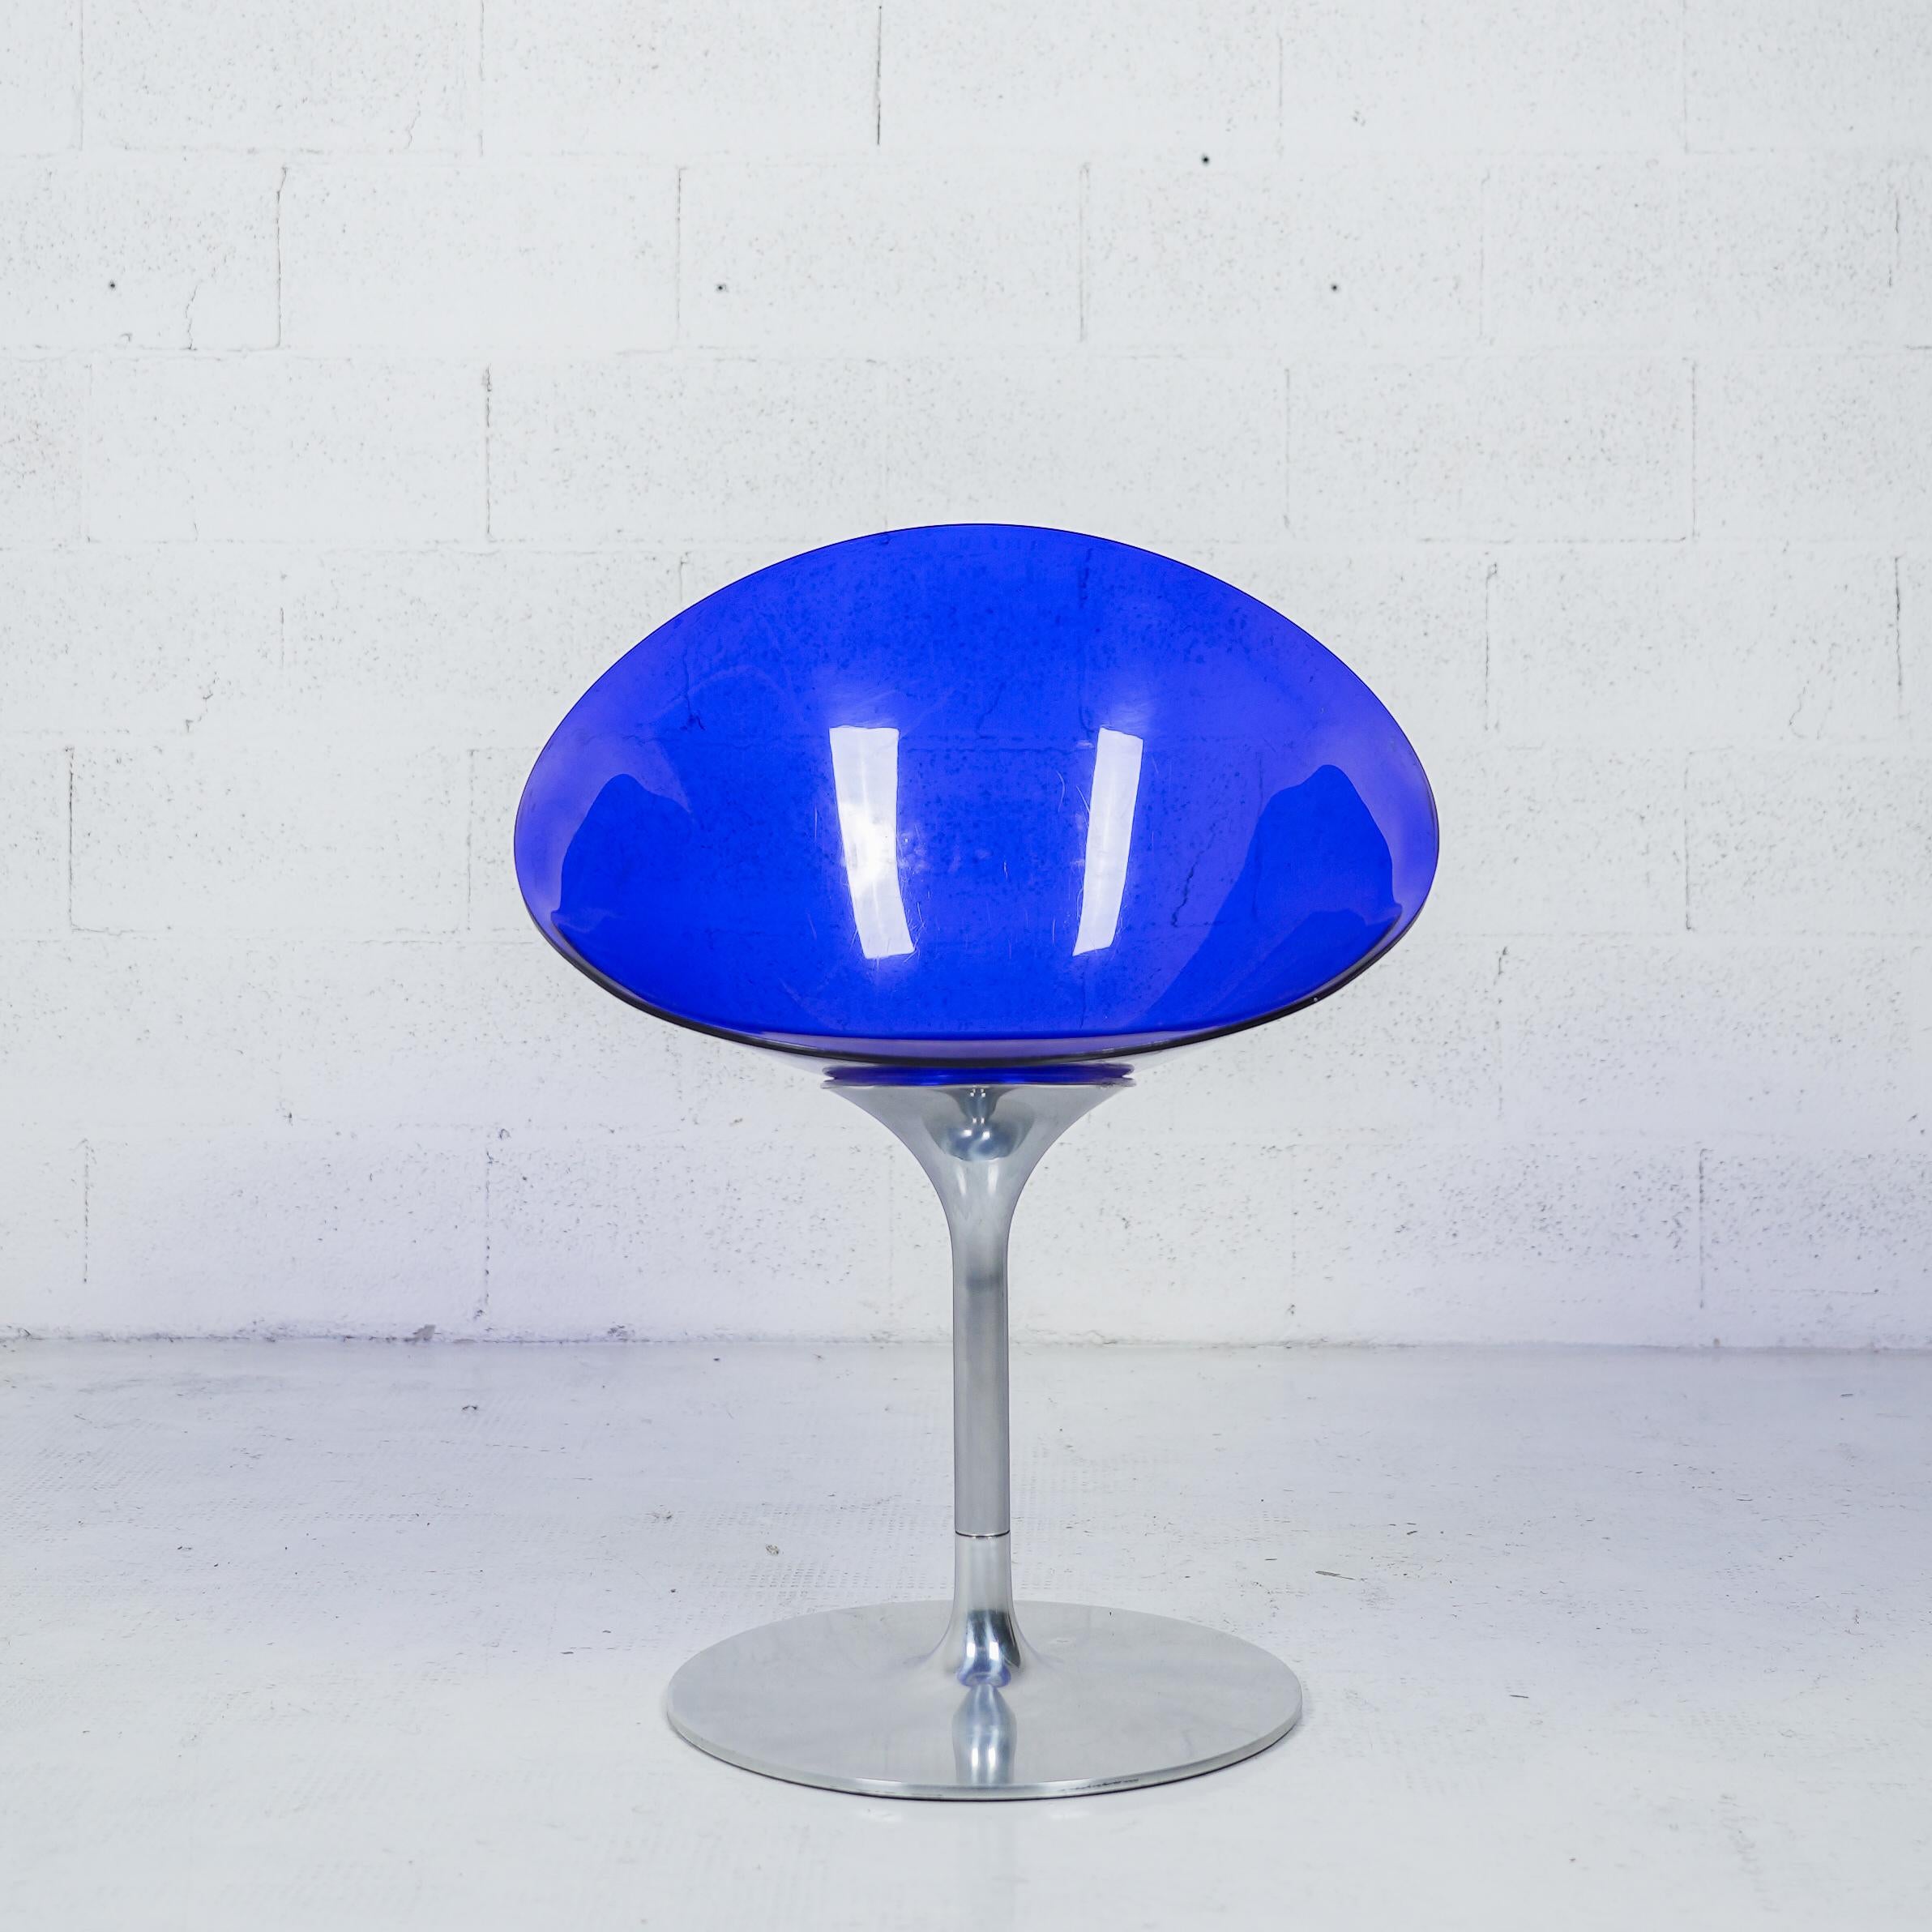 Eros ist ein umhüllender Sessel mit einer organischen Eiform, der sich durch eine raffinierte Kombination von Oberflächen und eine gekonnte Farbgebung auszeichnet. Eros ist ideal für den Wohnbereich, das Esszimmer oder das Wohnzimmer, kann aber auch